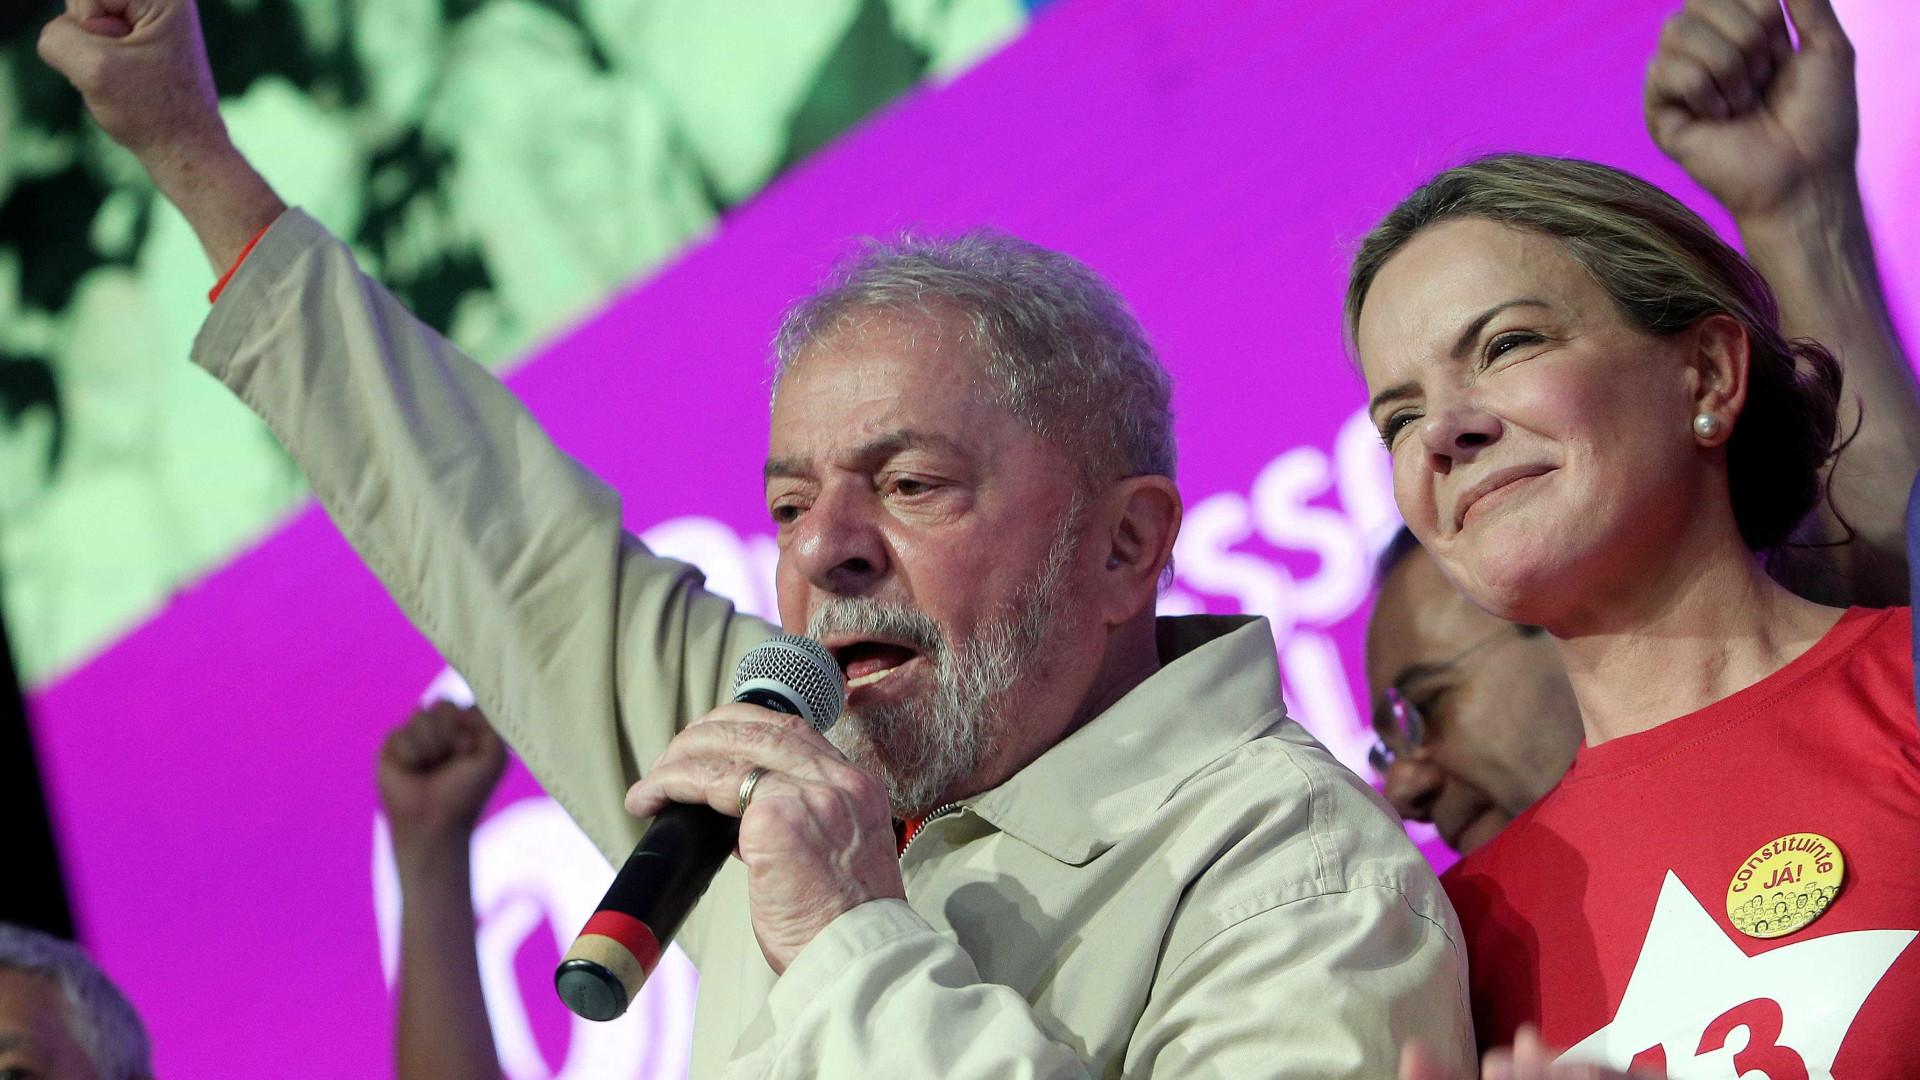 Antes de se entregar, Lula traÃ§ou 'missÃµes' para Gleisi e Haddad